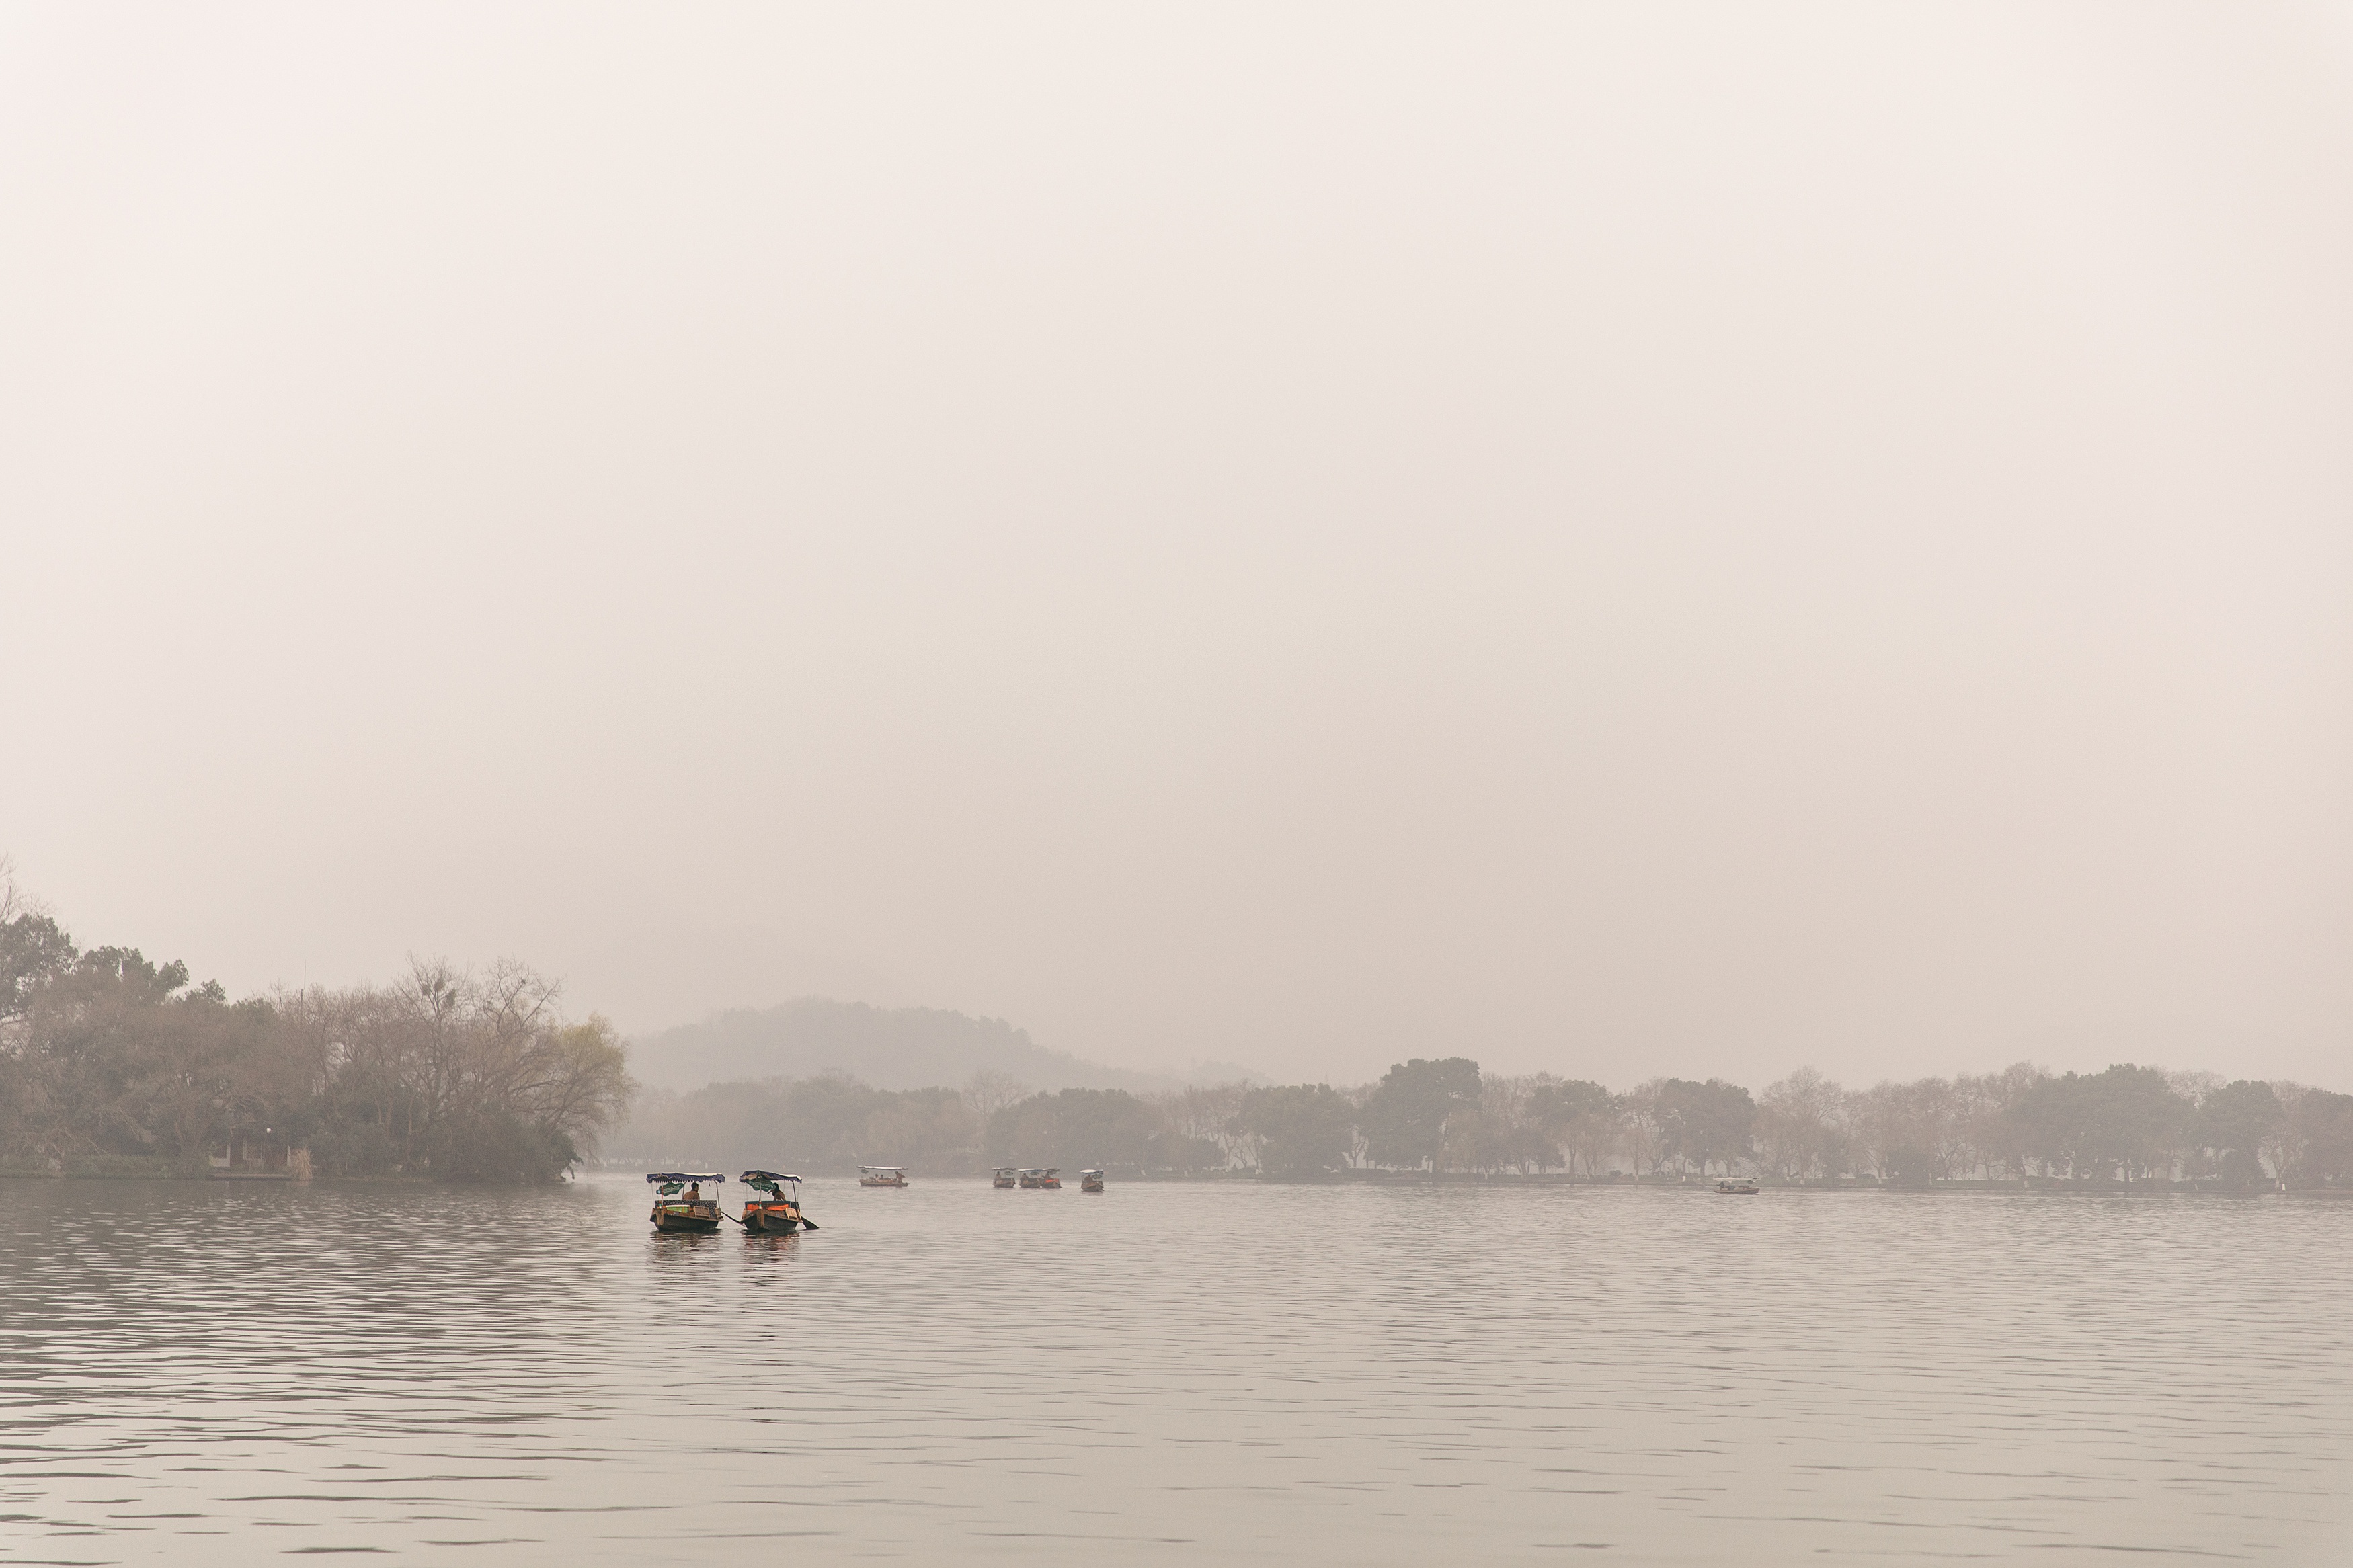 Chinese boats on lake